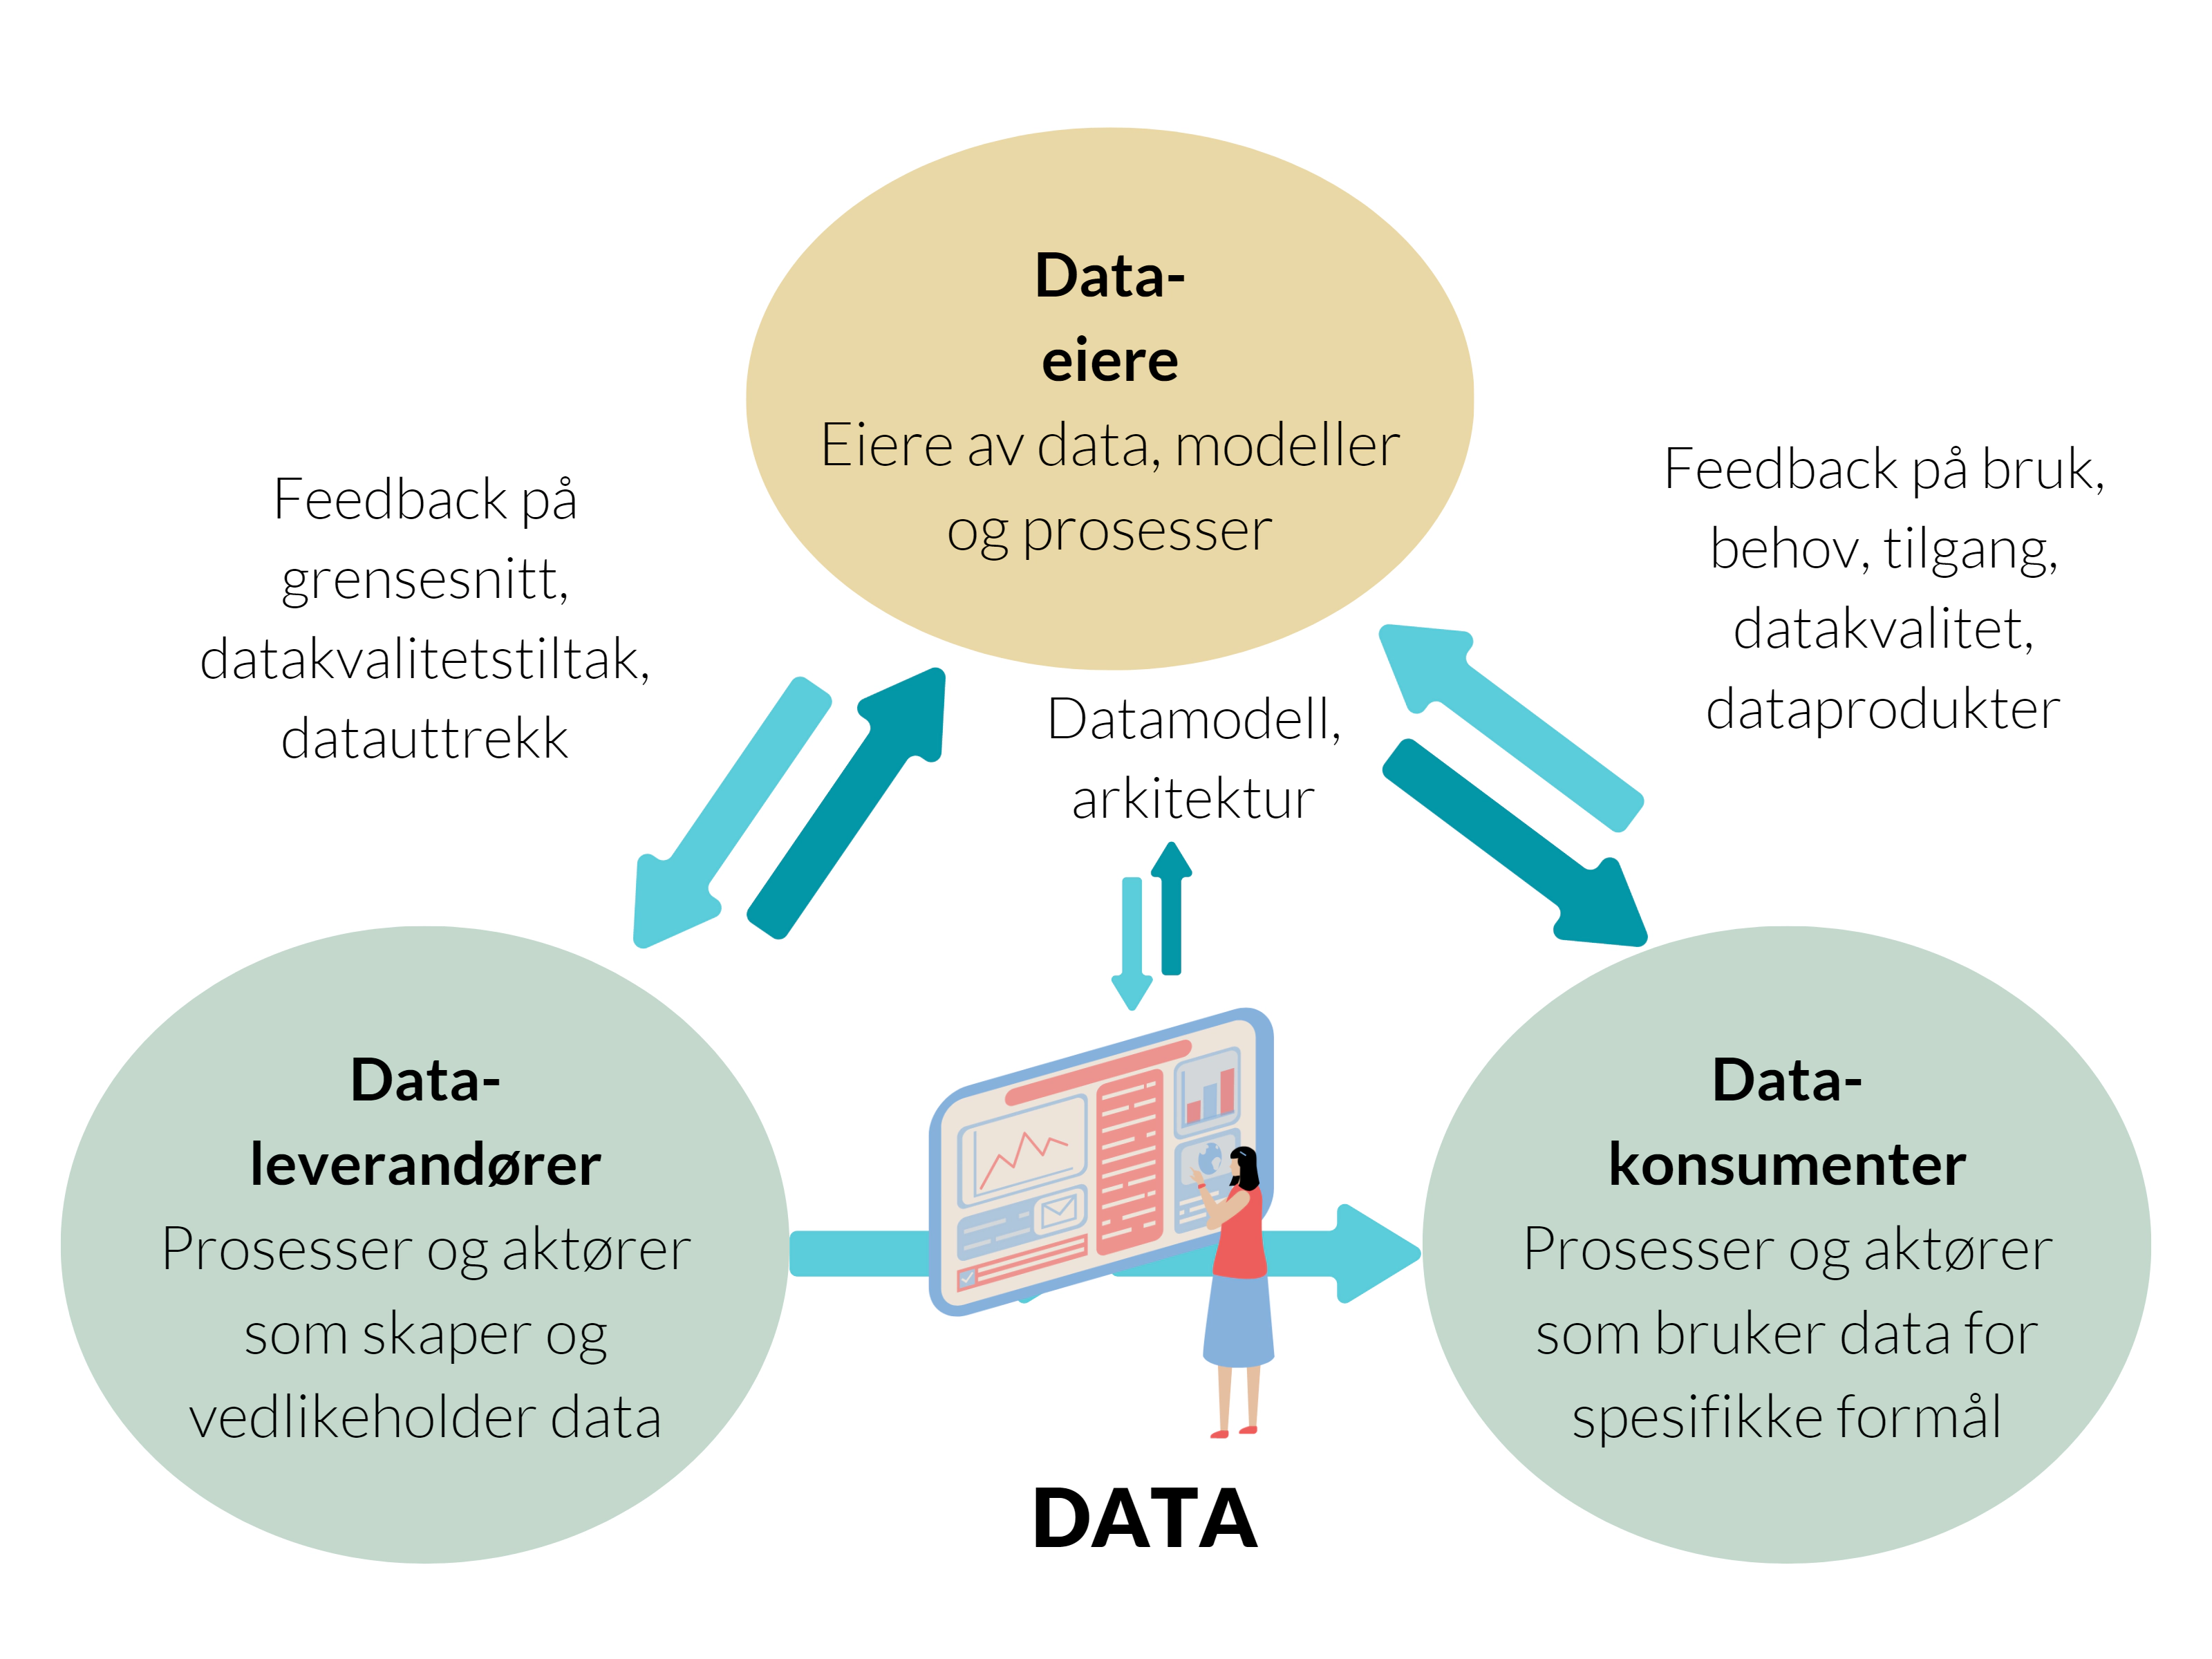 Bildet er laget av Glitni og illustrerer hvordan data-eiere koordinerer med dataleverandører og datakonsumenter